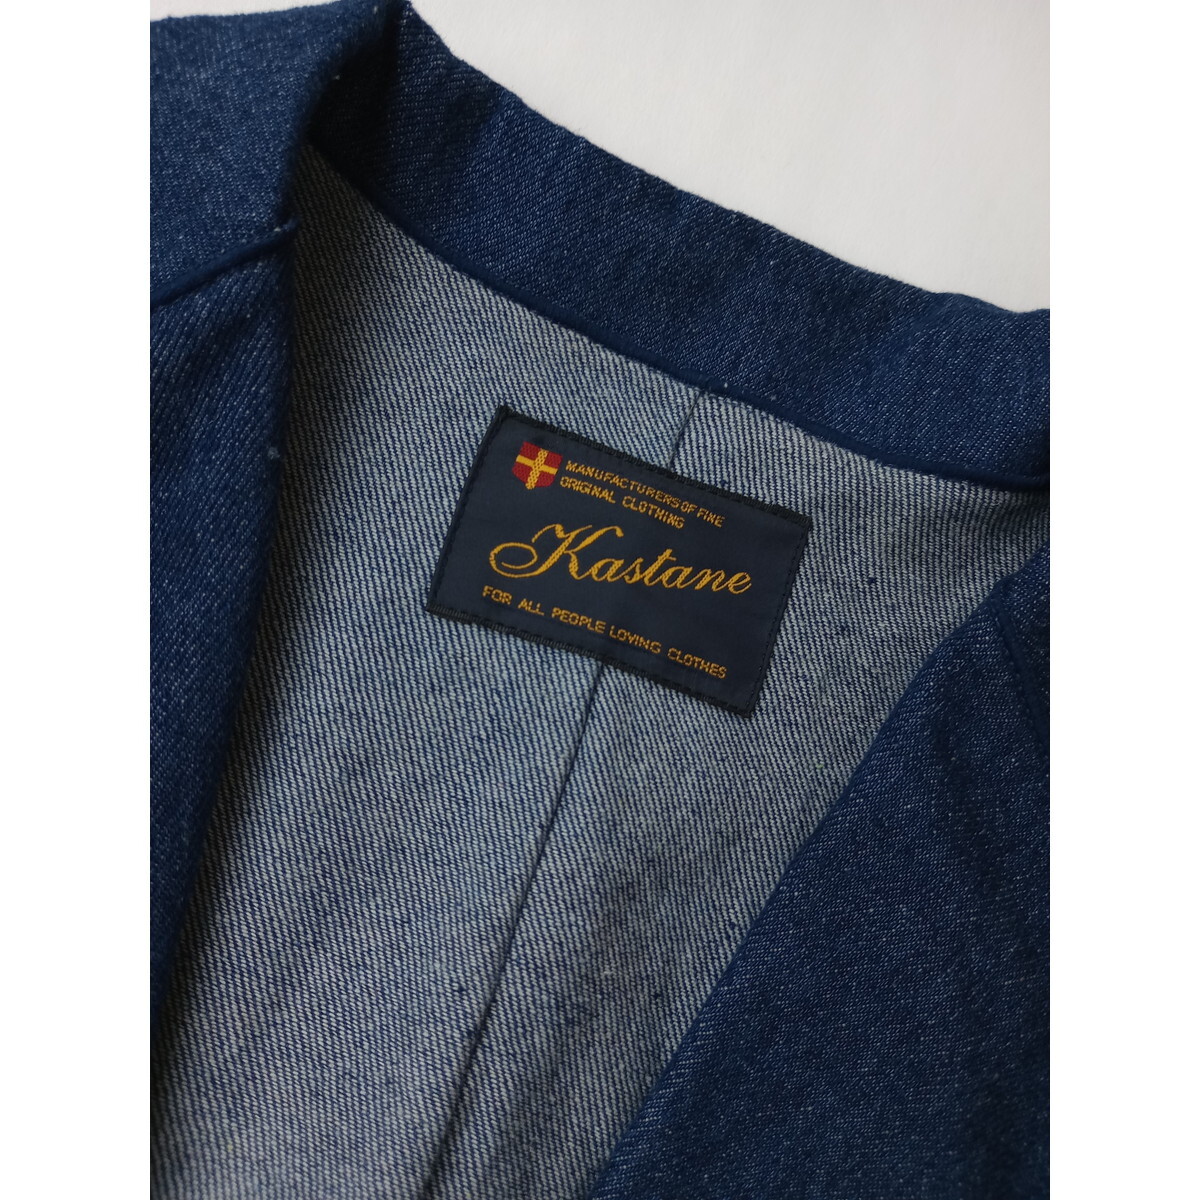 Kastane カスタネ「適度なゆるさとおしゃれ感。」オーバーサイズ ビックシルエット デニム ジャケット 羽織り (49K+0618)の画像5